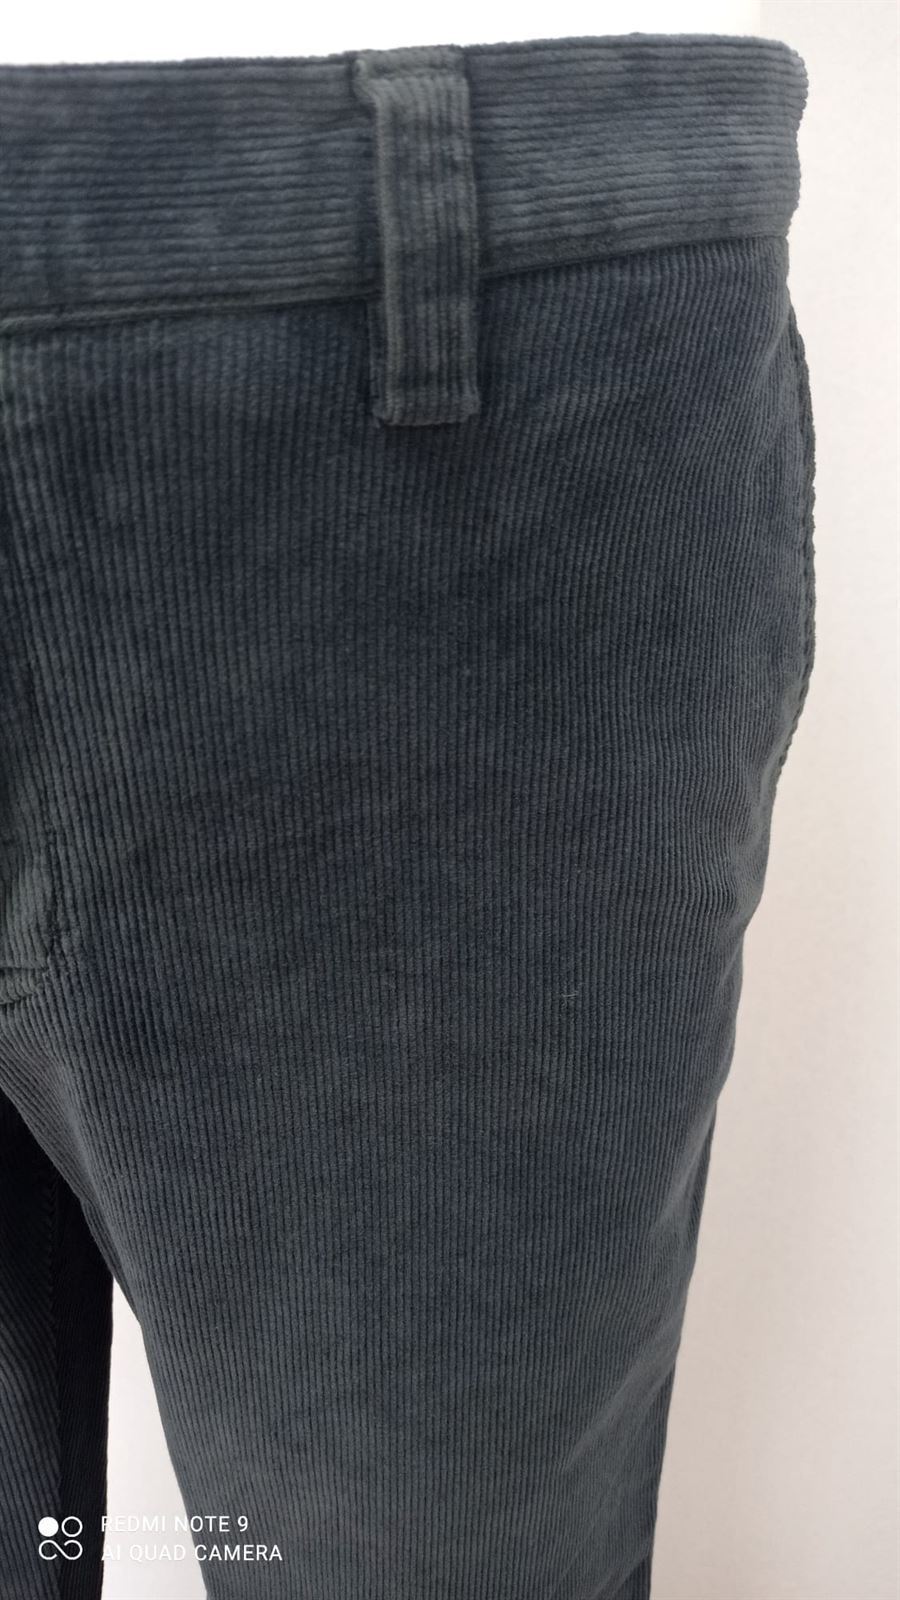 Pantalón pana gris - Imagen 3